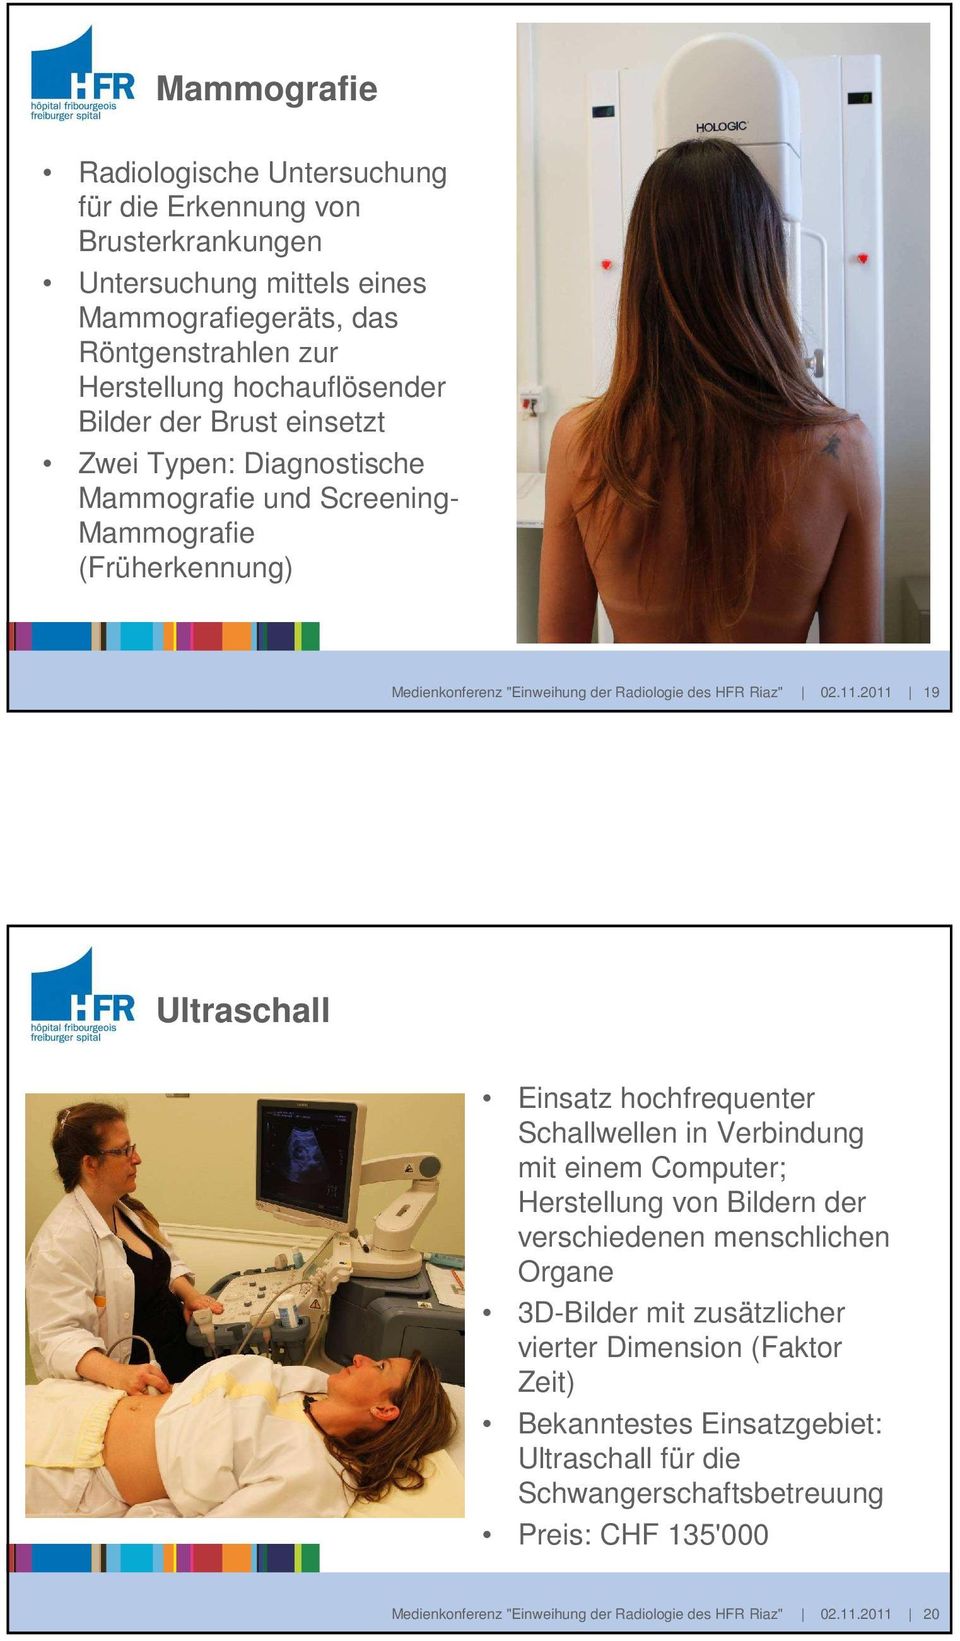 2011 19 Ultraschall Einsatz hochfrequenter Schallwellen in Verbindung mit einem Computer; Herstellung von Bildern der verschiedenen menschlichen Organe 3D-Bilder mit zusätzlicher